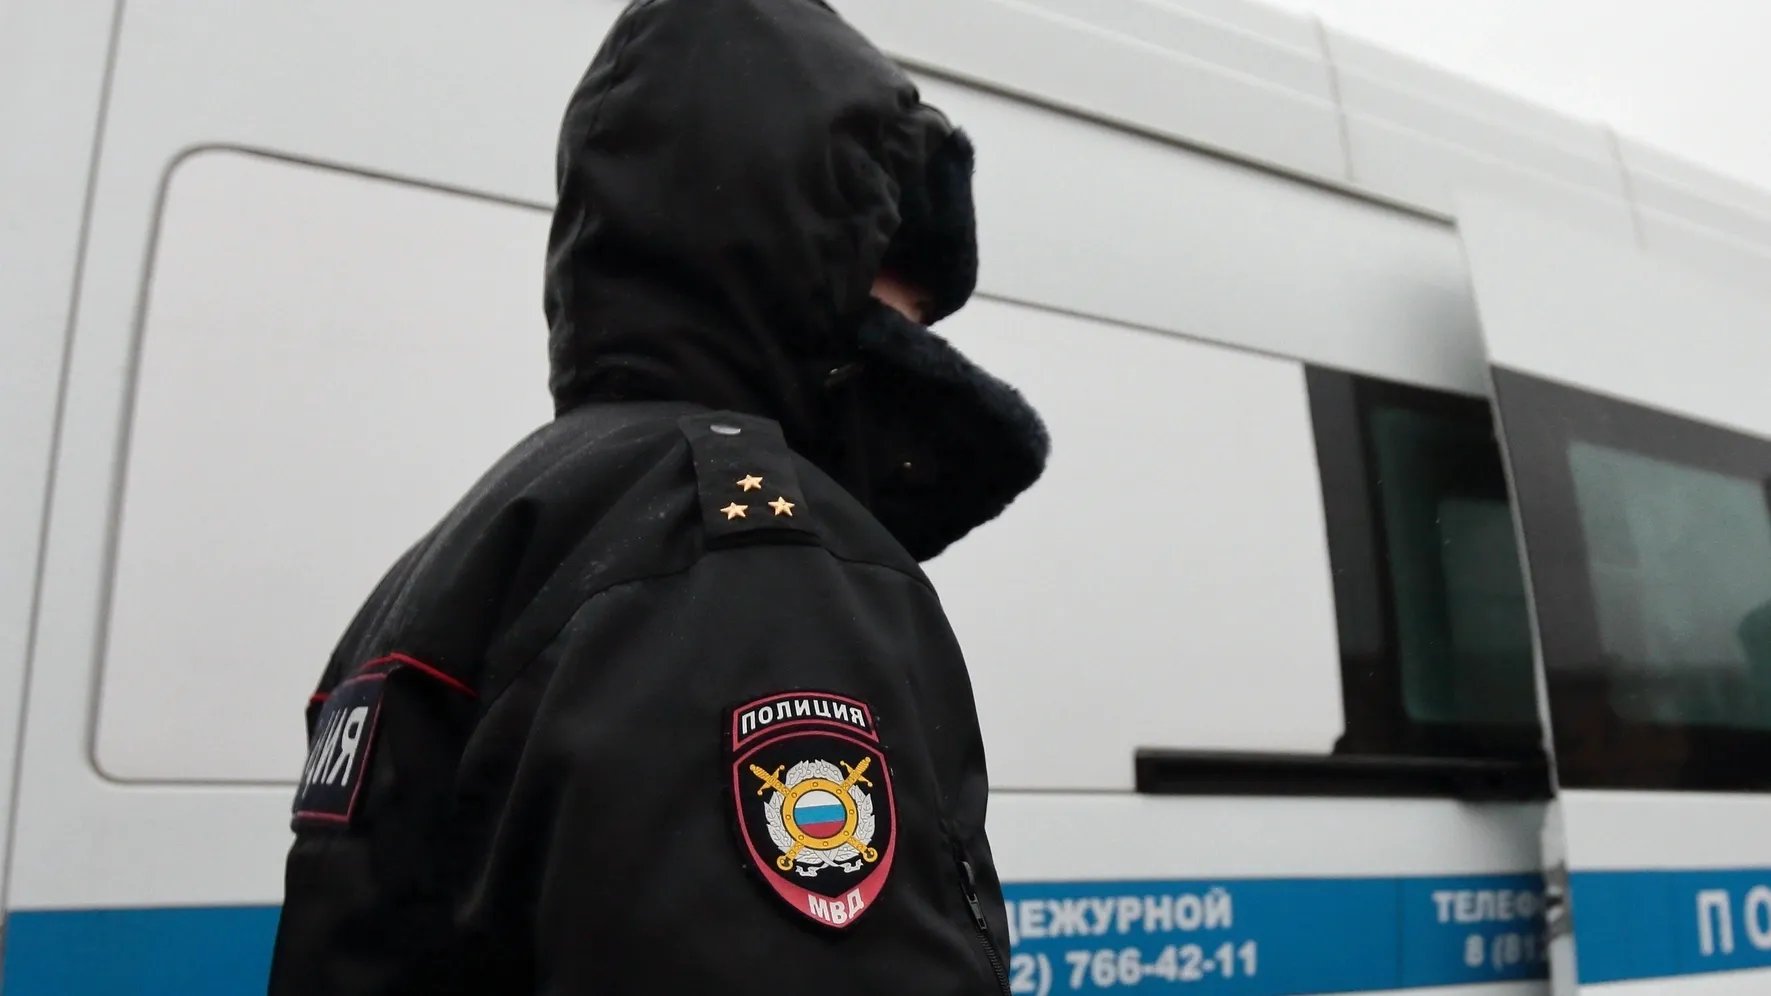 В полицию Салехарда требуются сотрудники. Фото: Konstantin Lenkov / Shutterstock / Fotodom